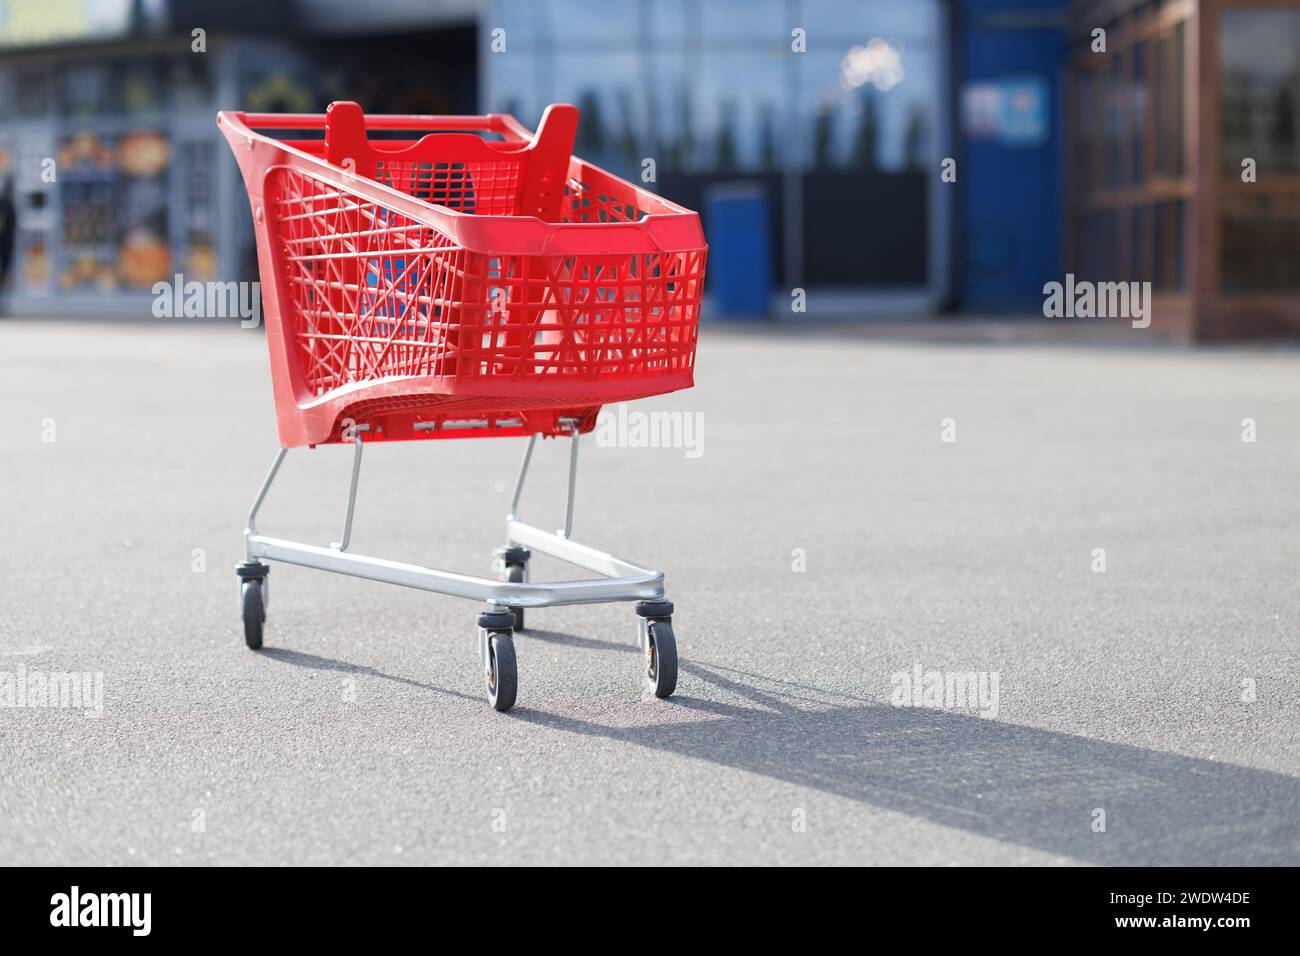 Un panier de supermarché rouge dans le parking. Photo de haute qualité Banque D'Images